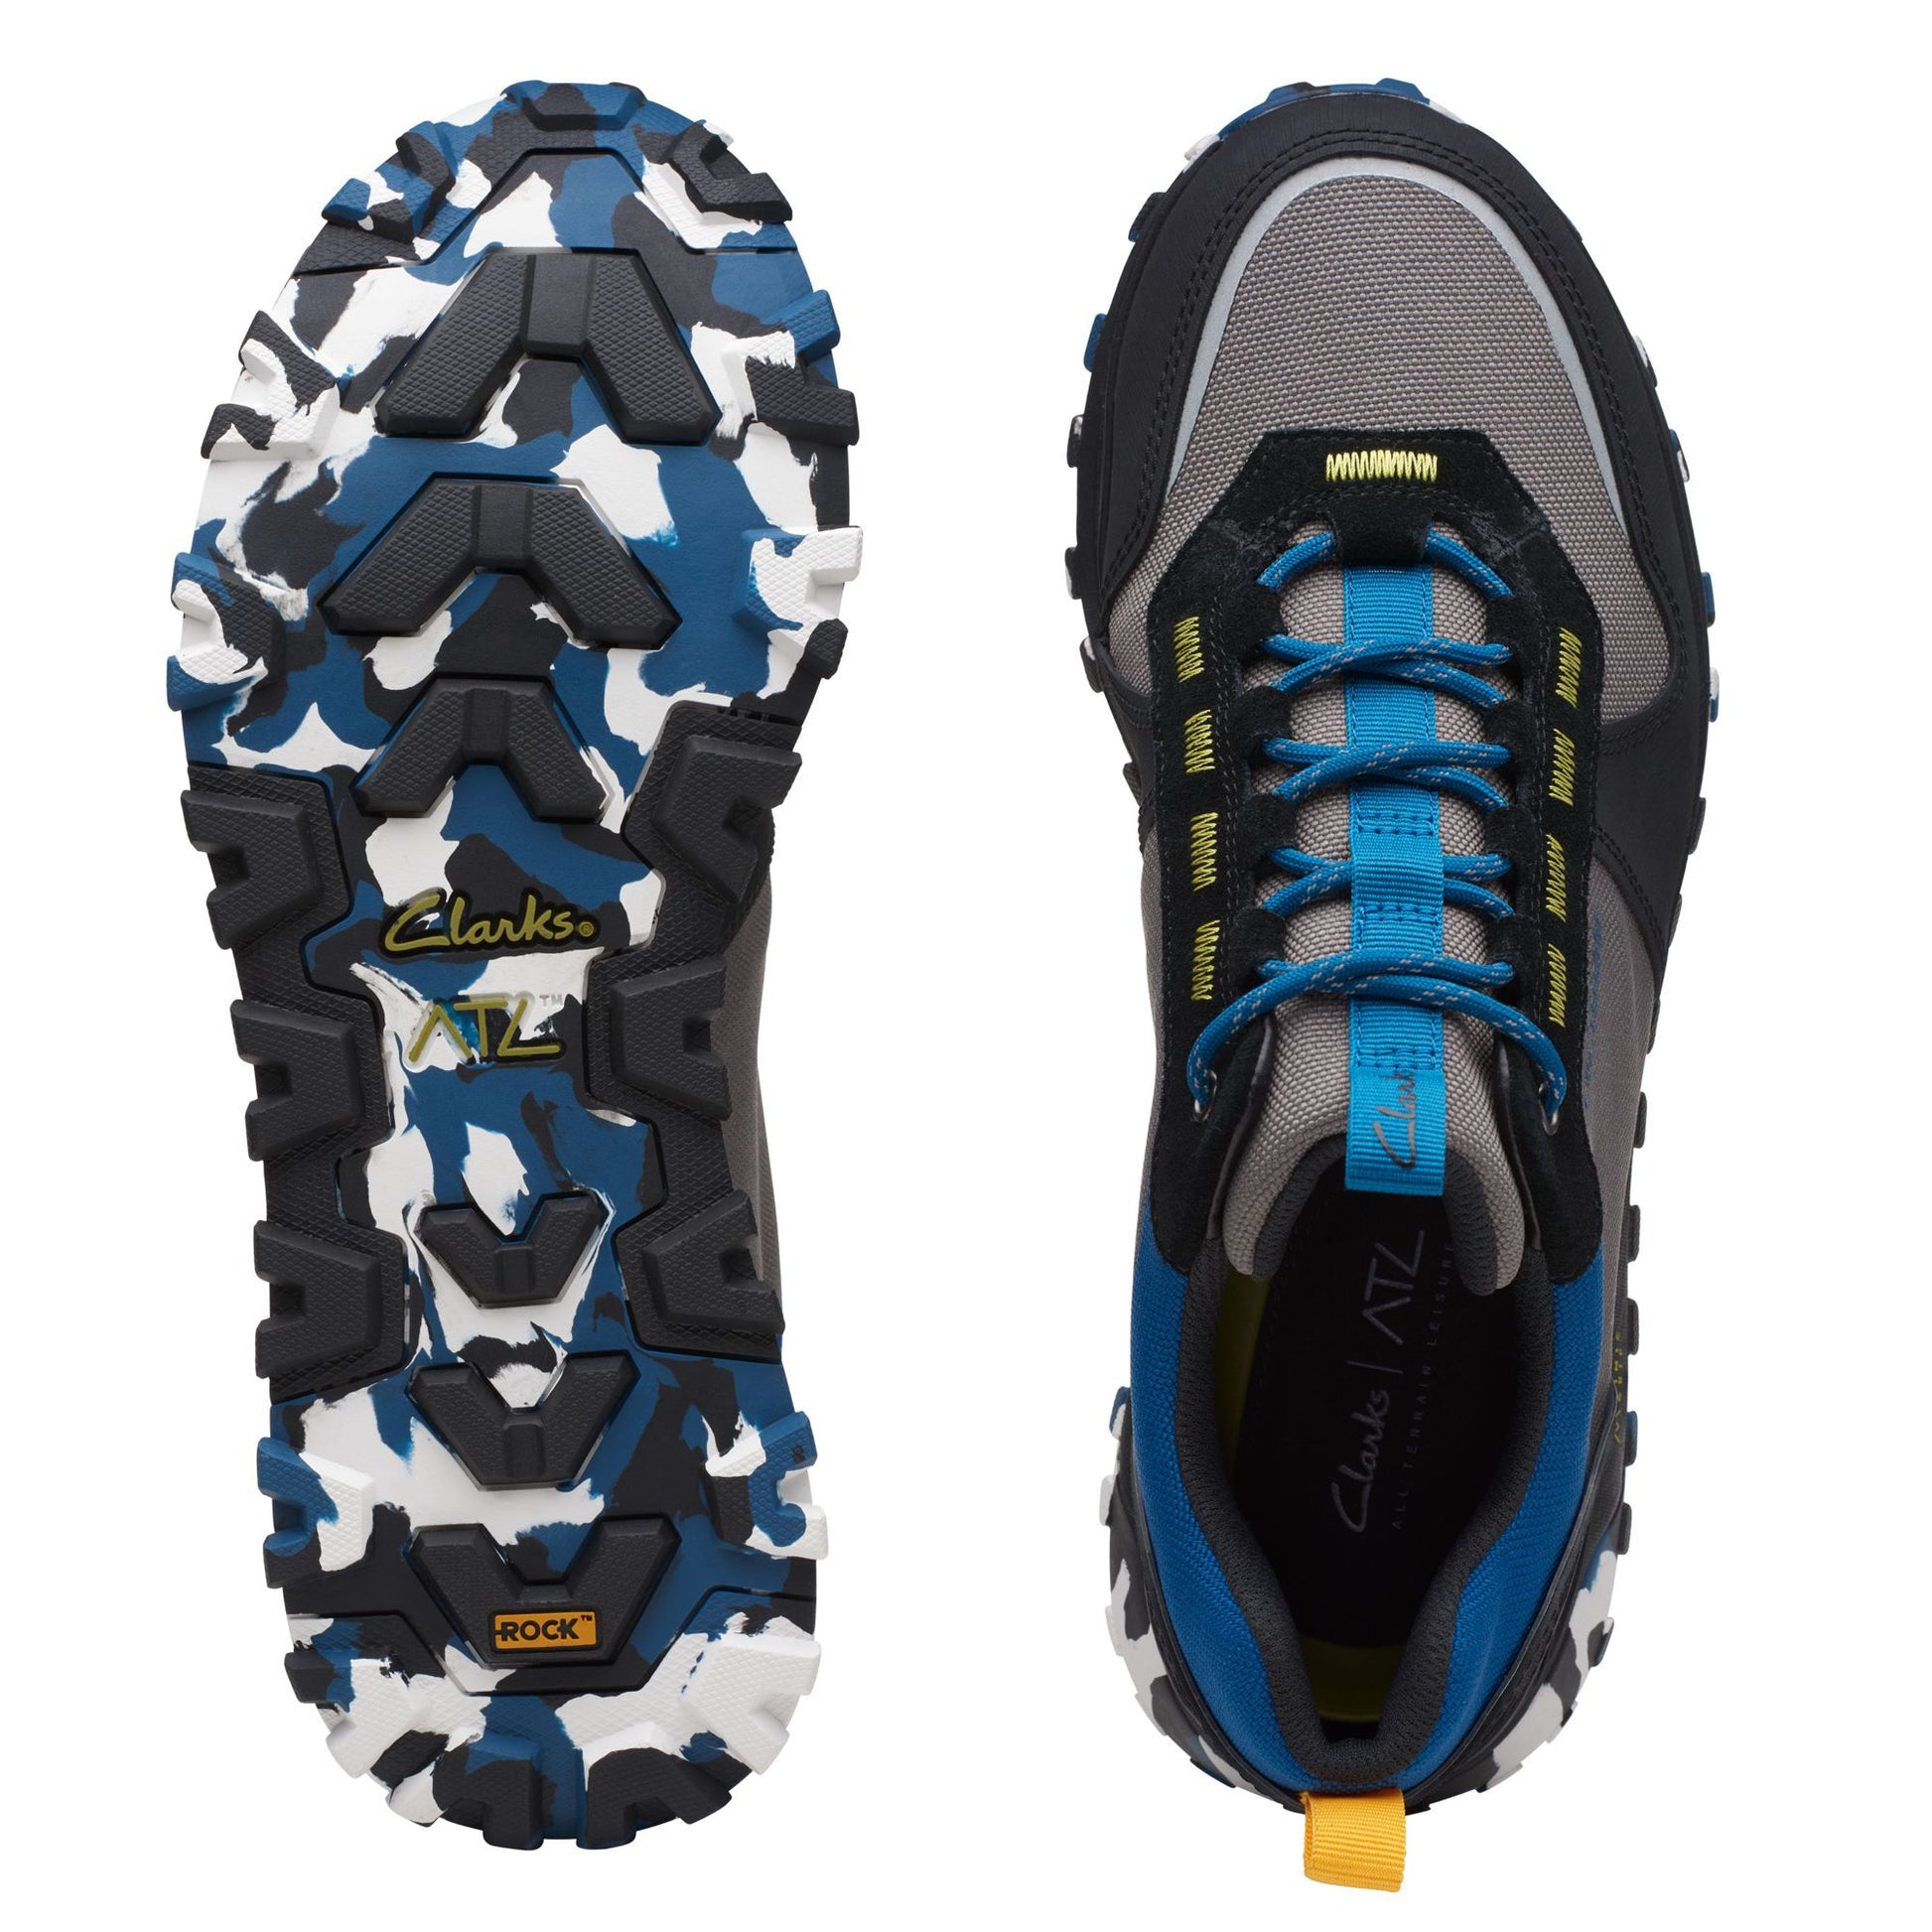 Sneakers De La Marca Clarks Para Hombre Modelo Atl Trek Walk Wp Gray CombiEn Color Gris